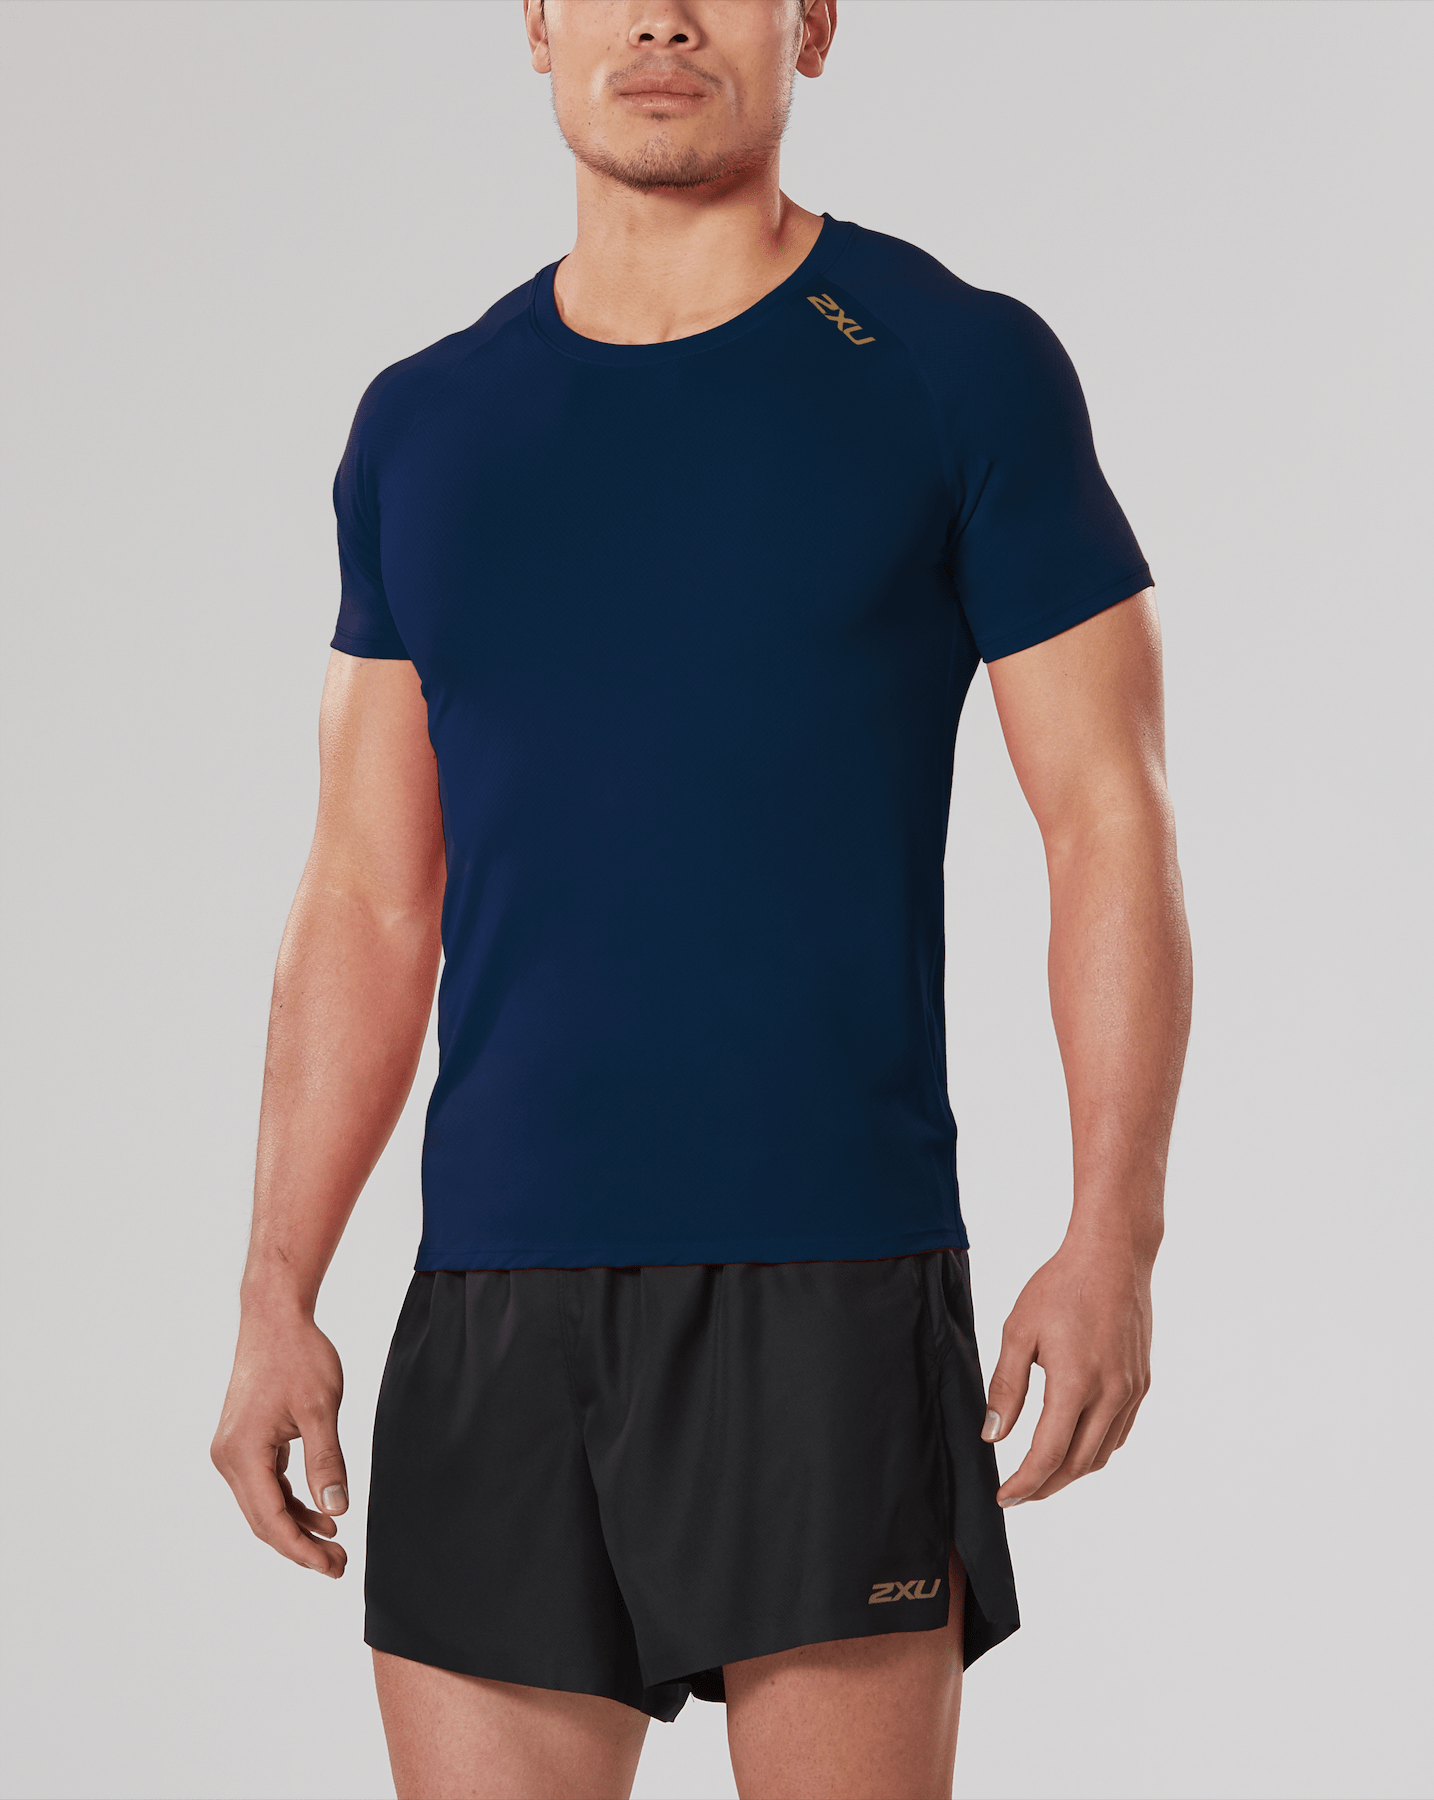 Мужская футболка для бега 2XU серия GHST с золотым логотипом